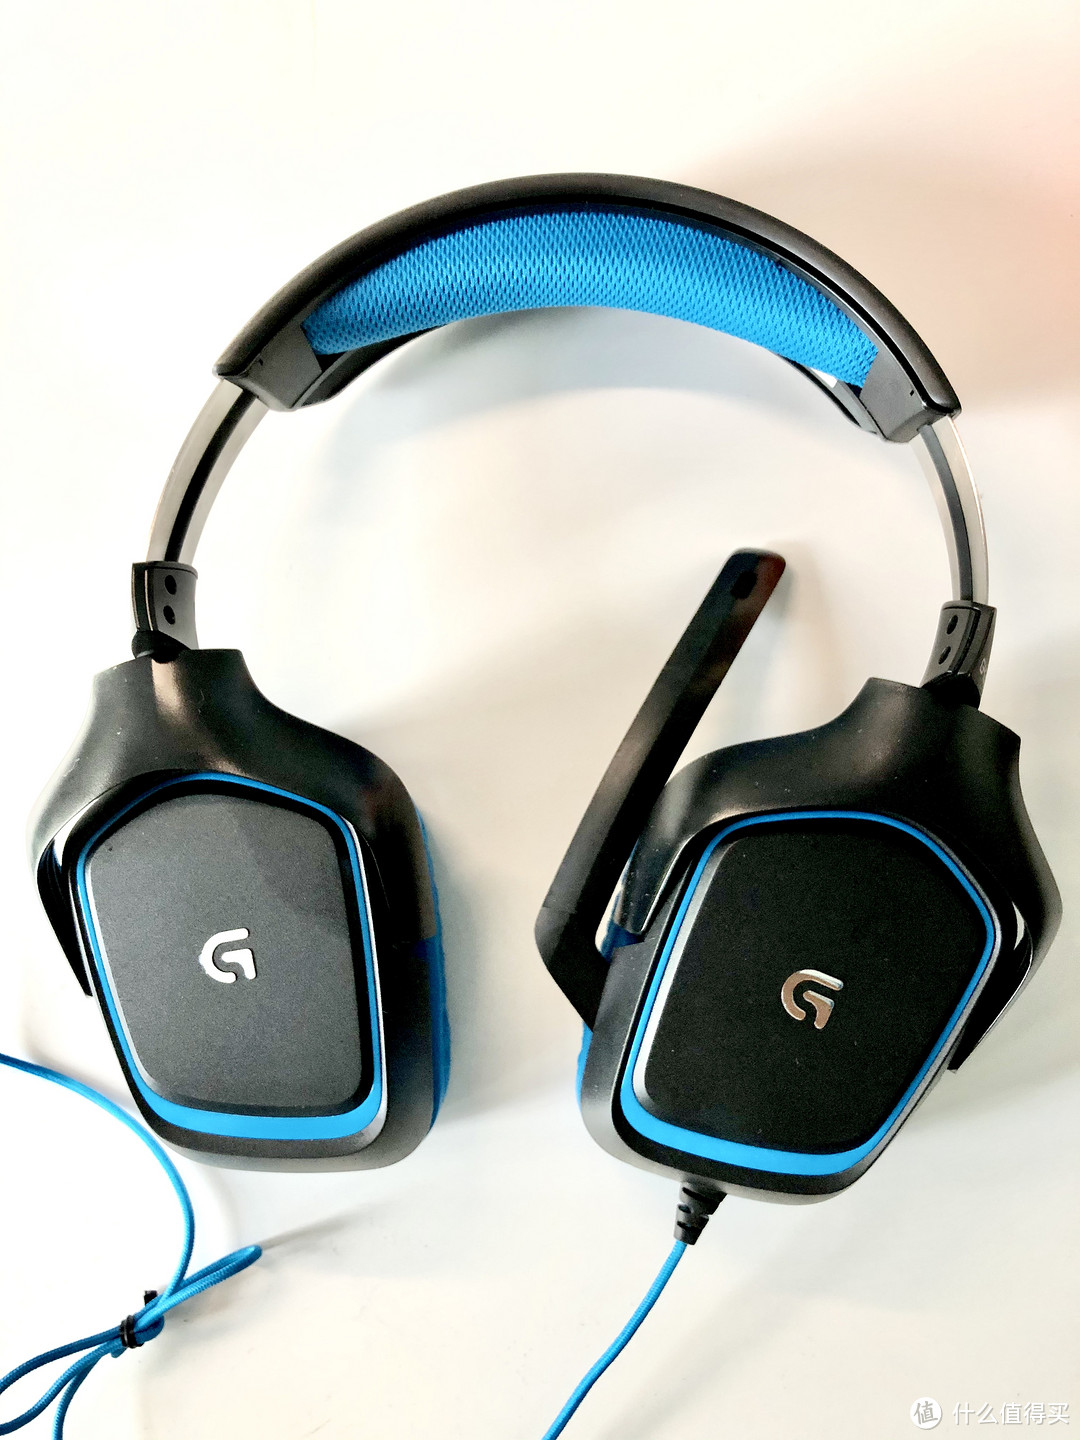 罗技G430 7.1环绕声游戏耳机使用体验